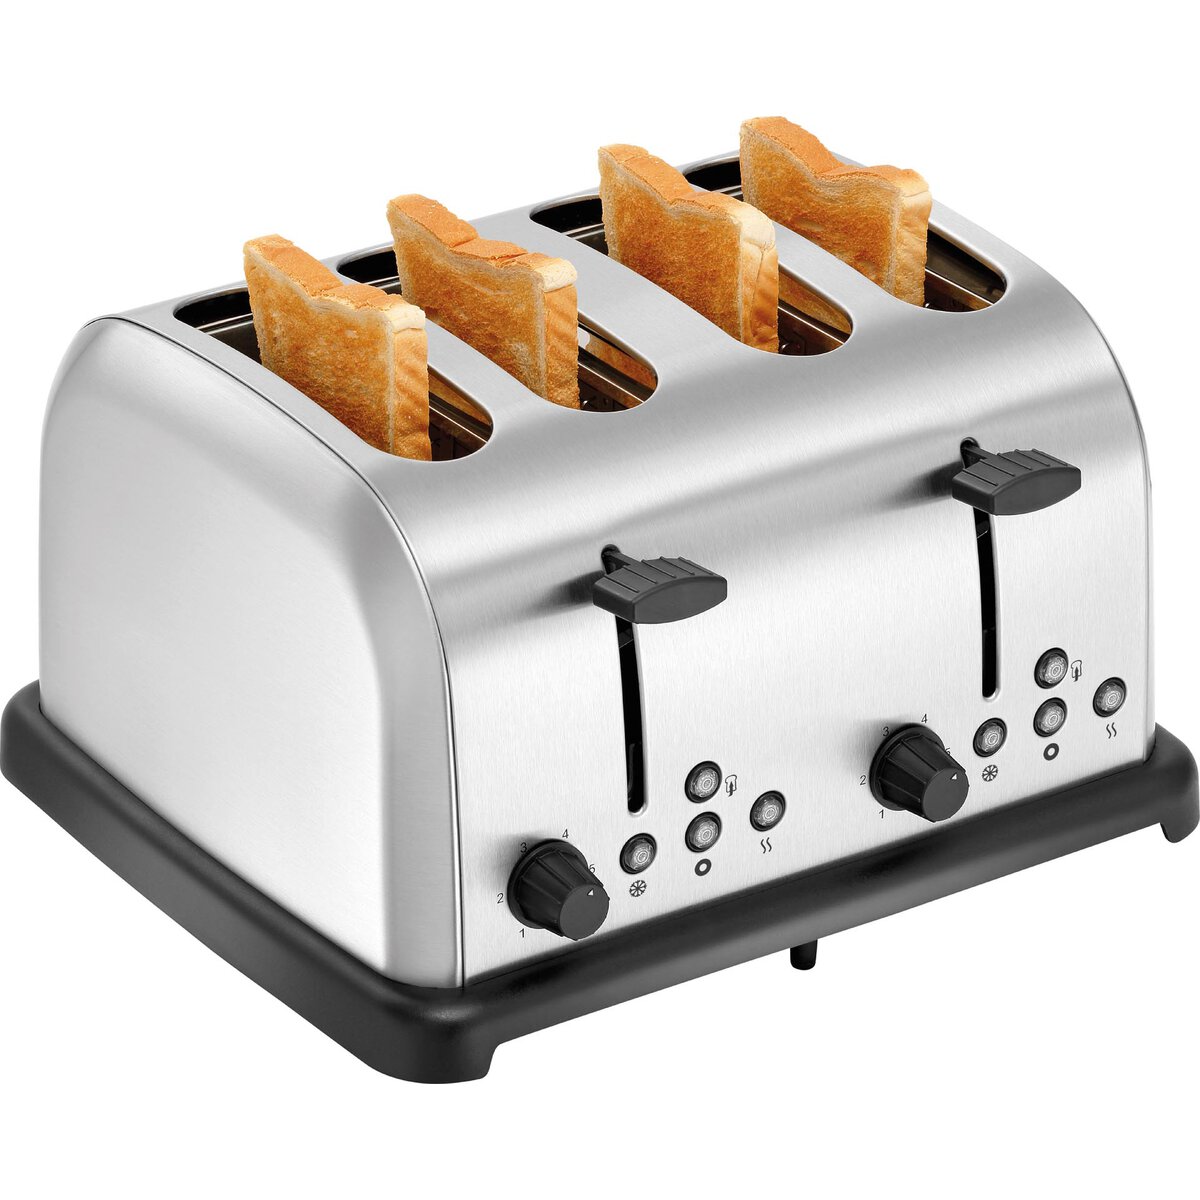 4 Scheiben Toaster (1)